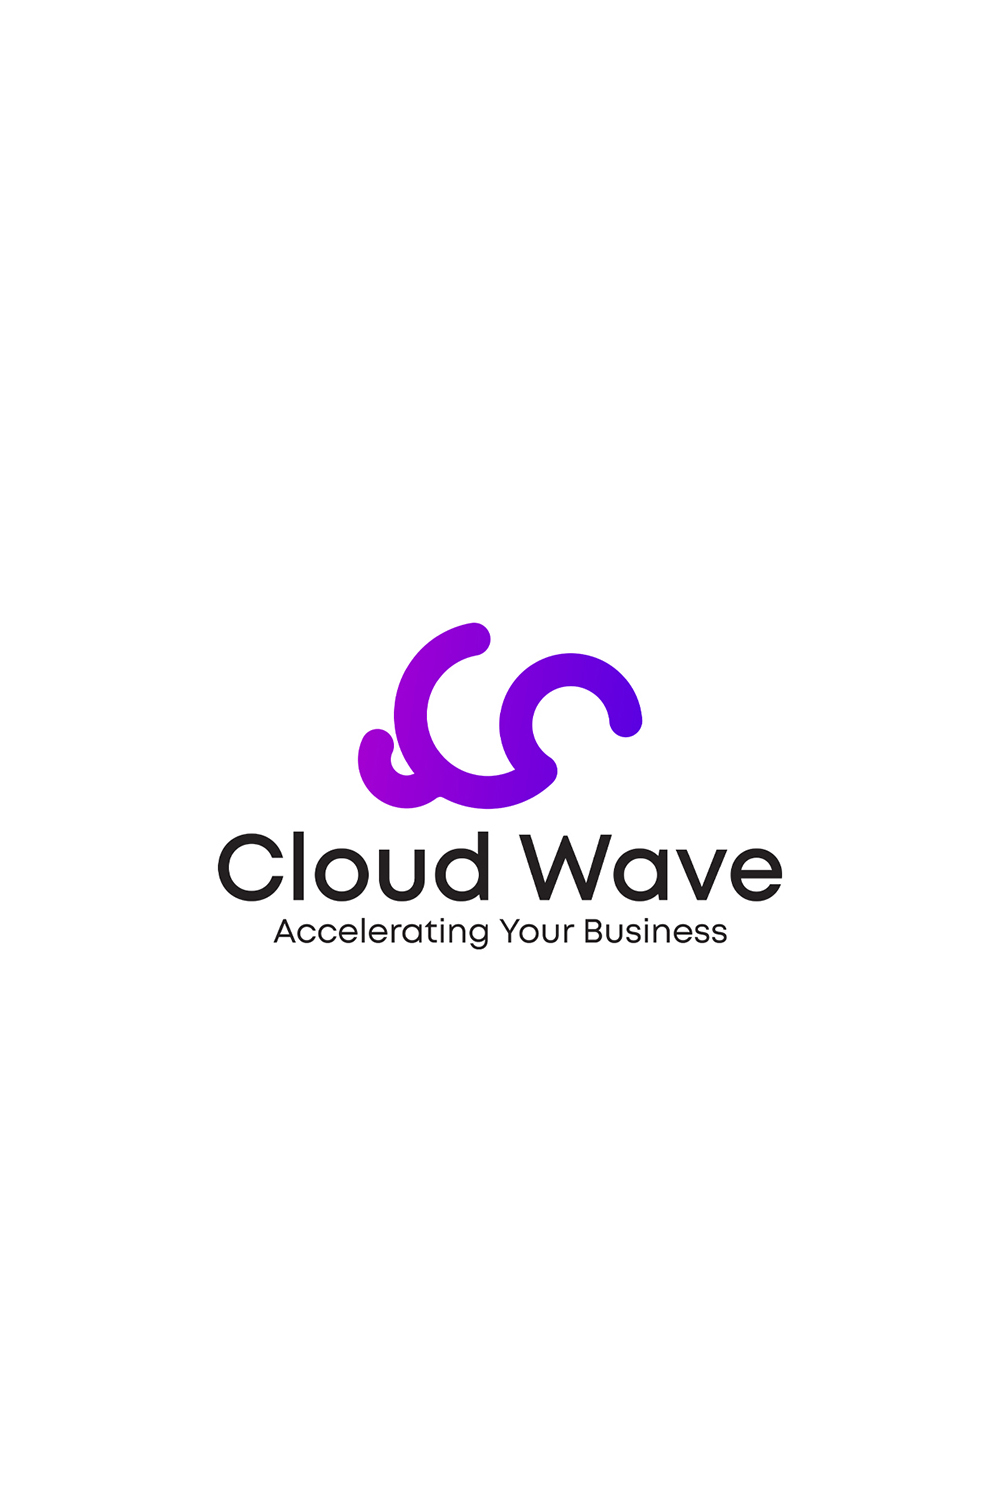 Cloud wave logo pinterest preview image.